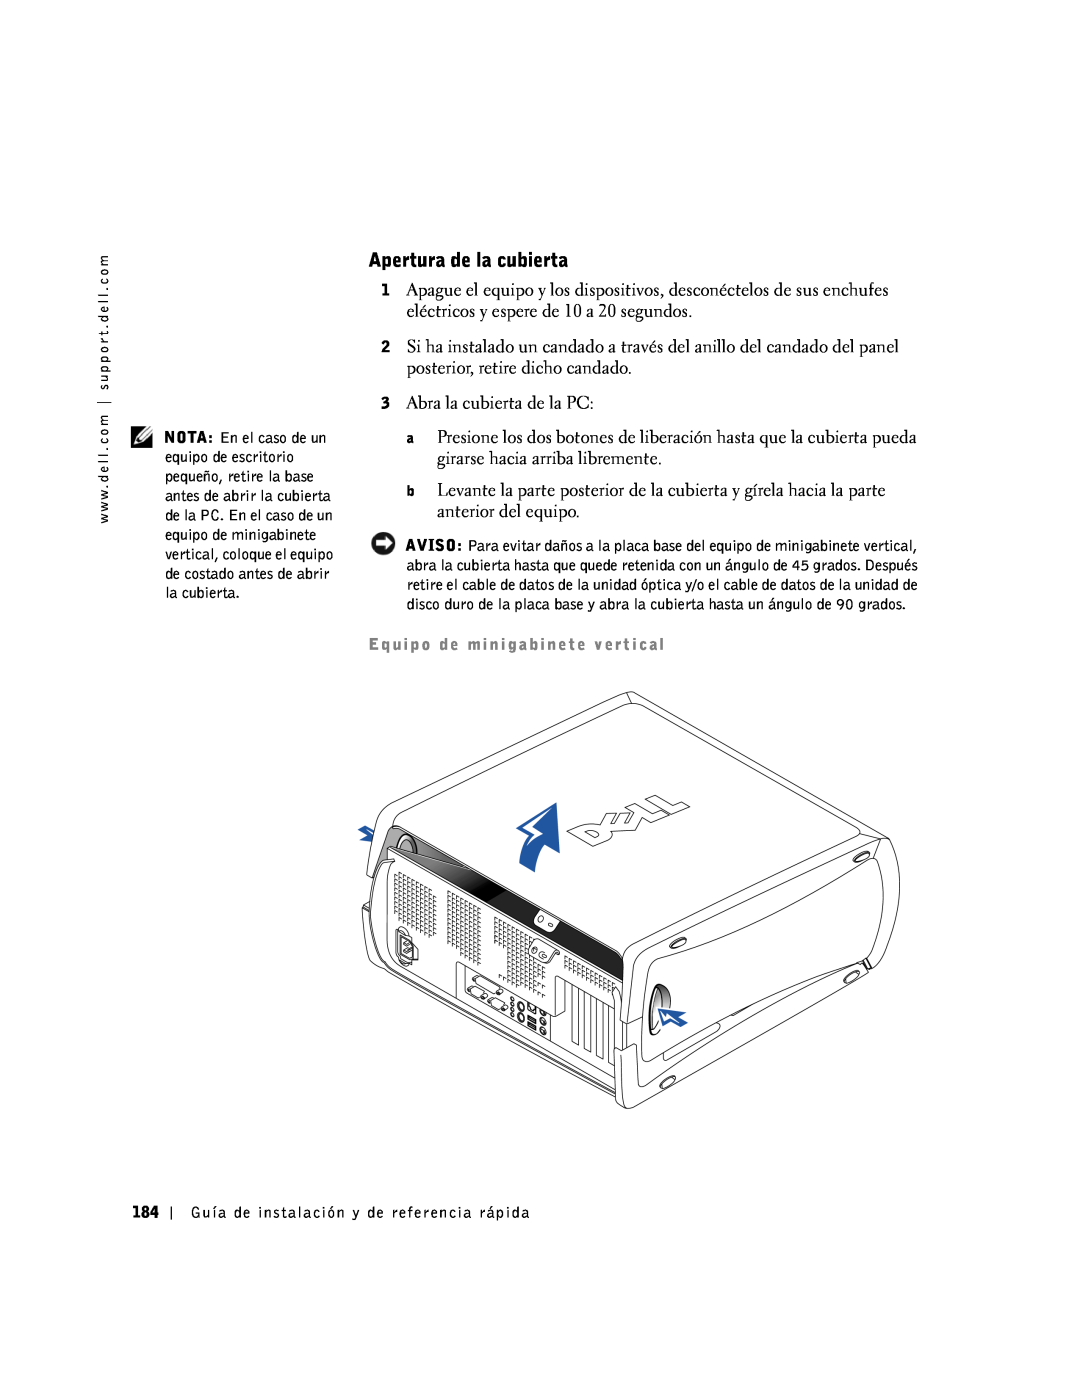 Dell 1G155 manual Apertura de la cubierta 